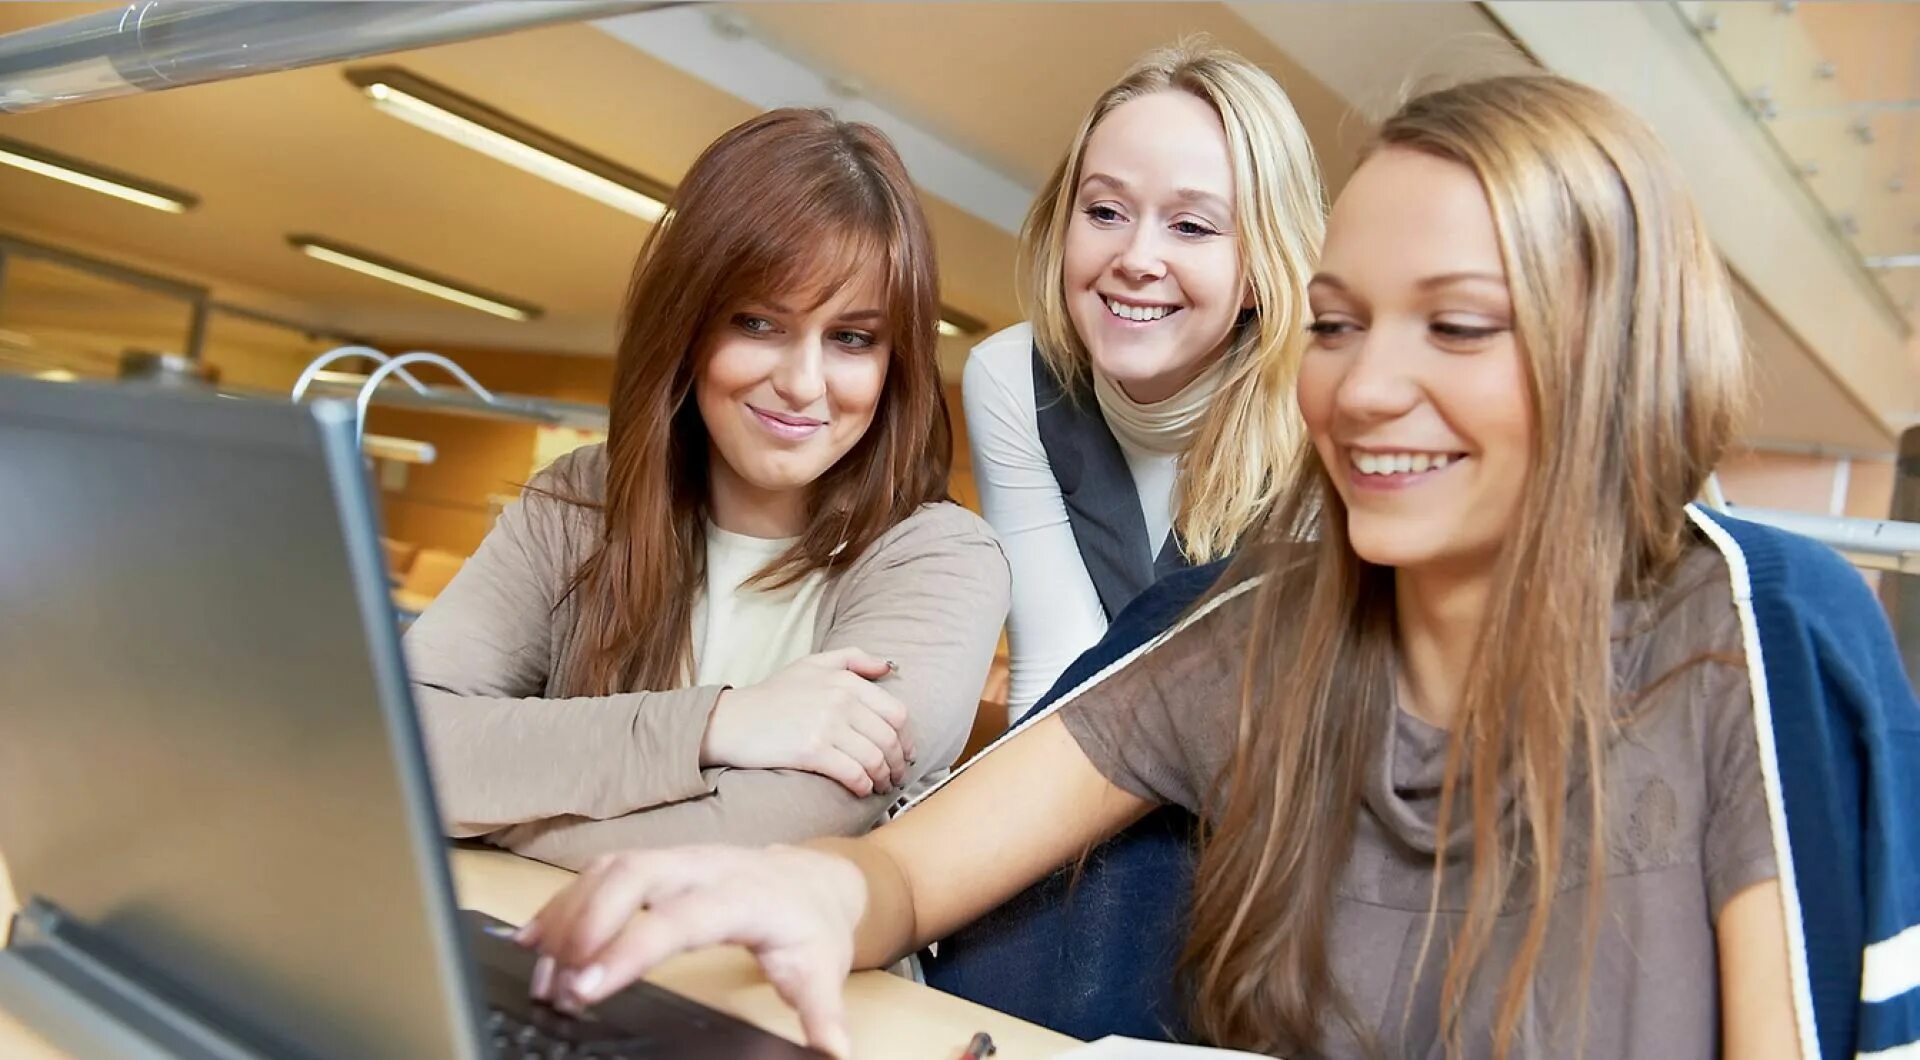 Студентка с ноутбуком. Студент с ноутбуком. Две девушки за компьютером. Три девушки за компьютером.